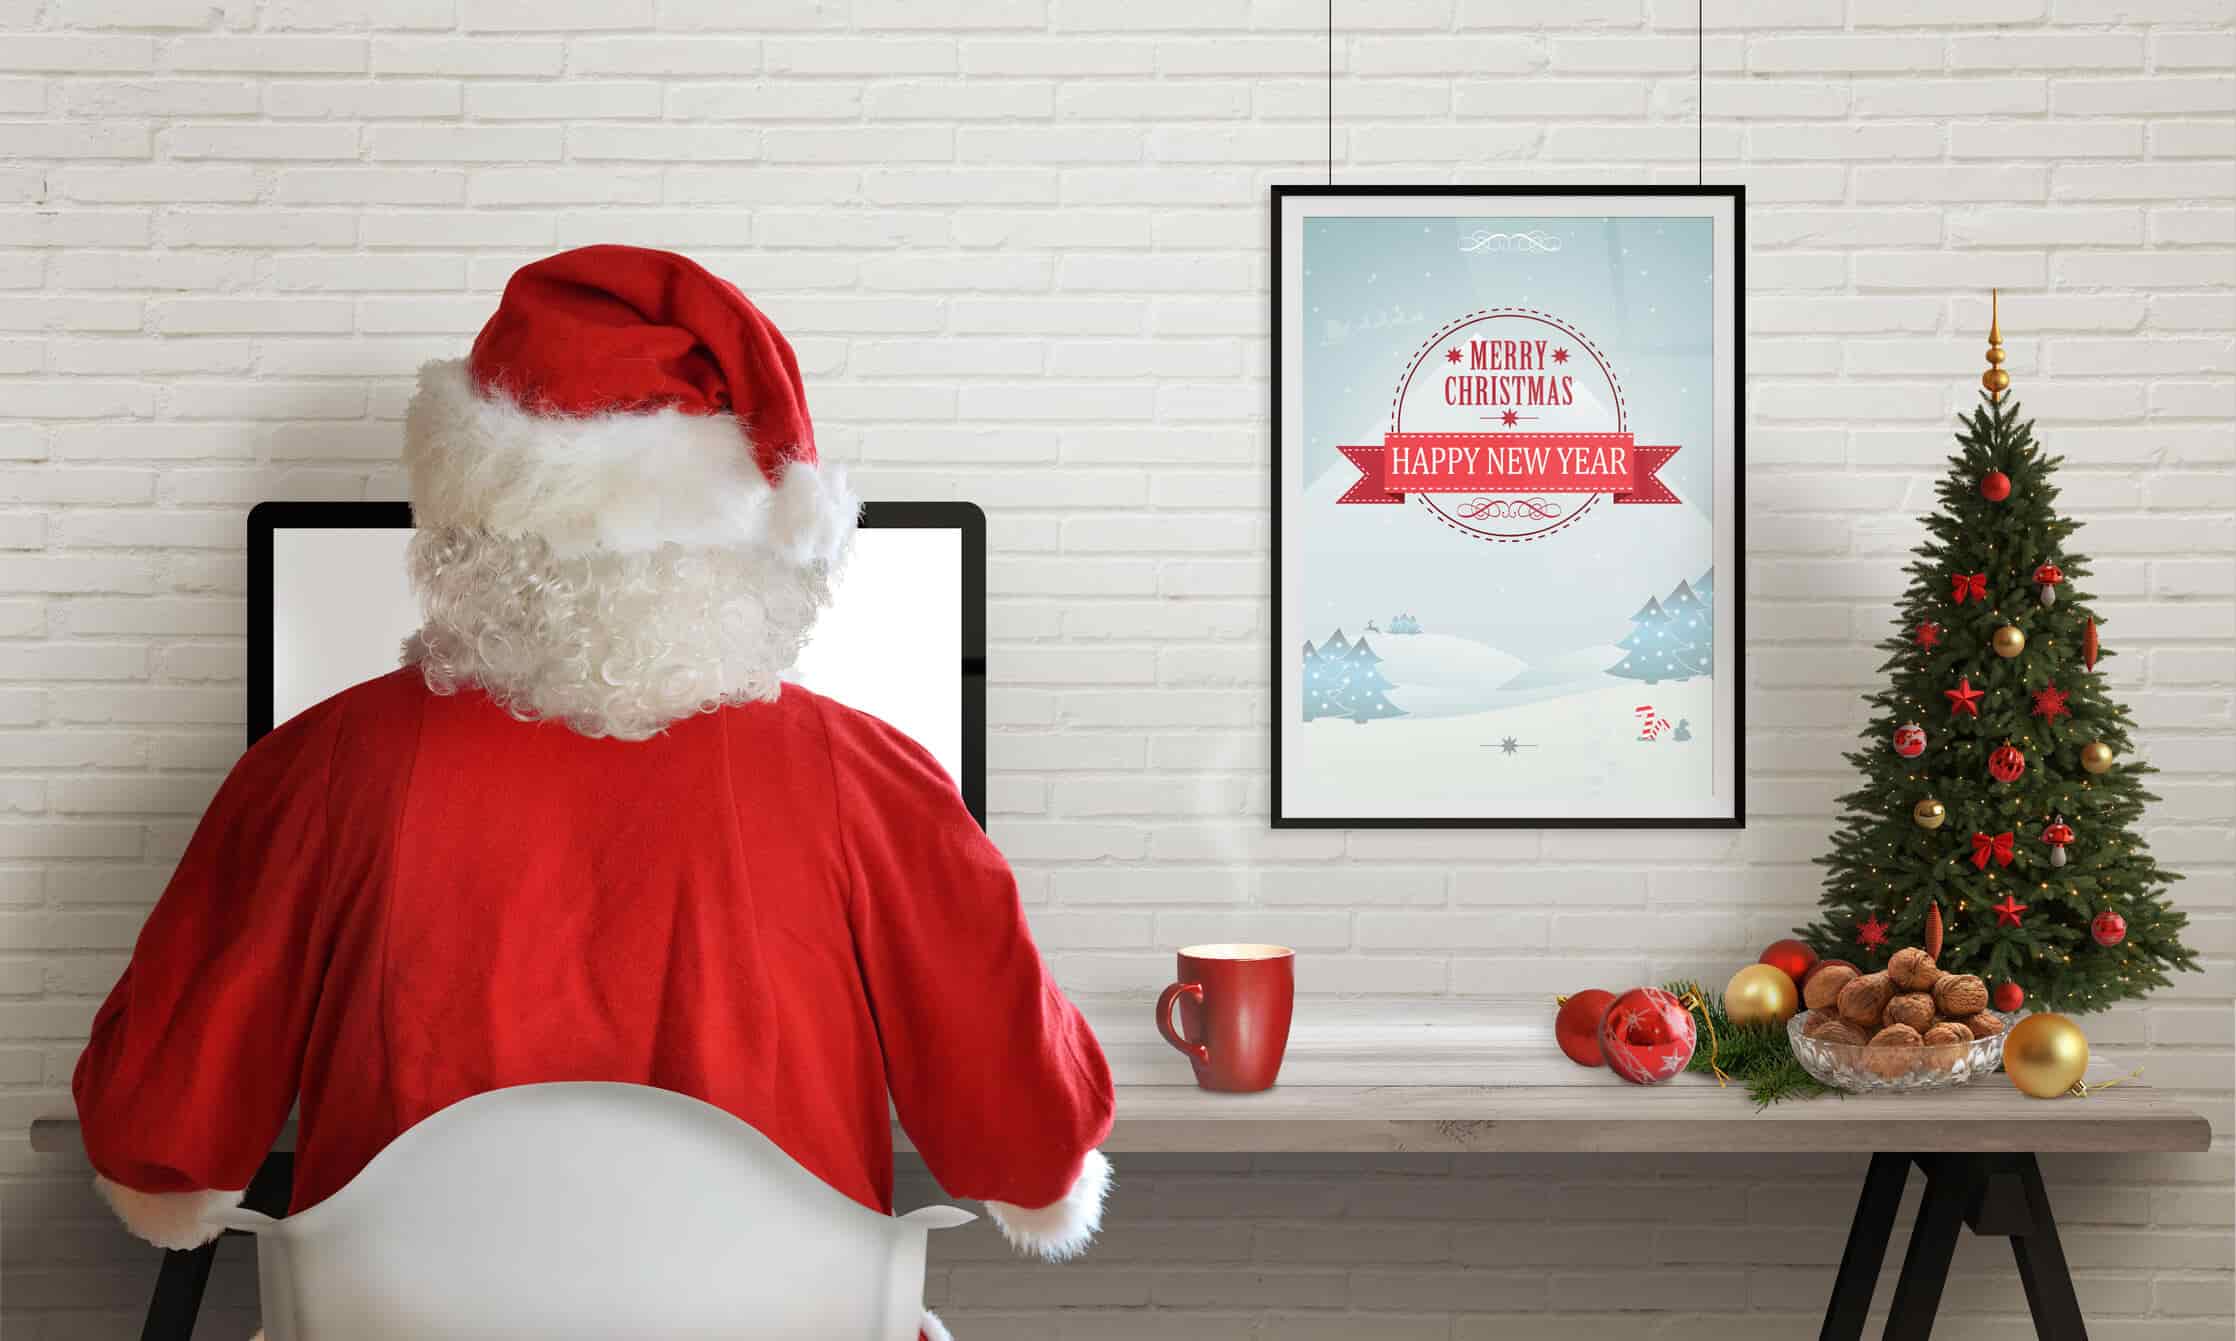 Tendencias de marketing para campañas navideñas en 2018